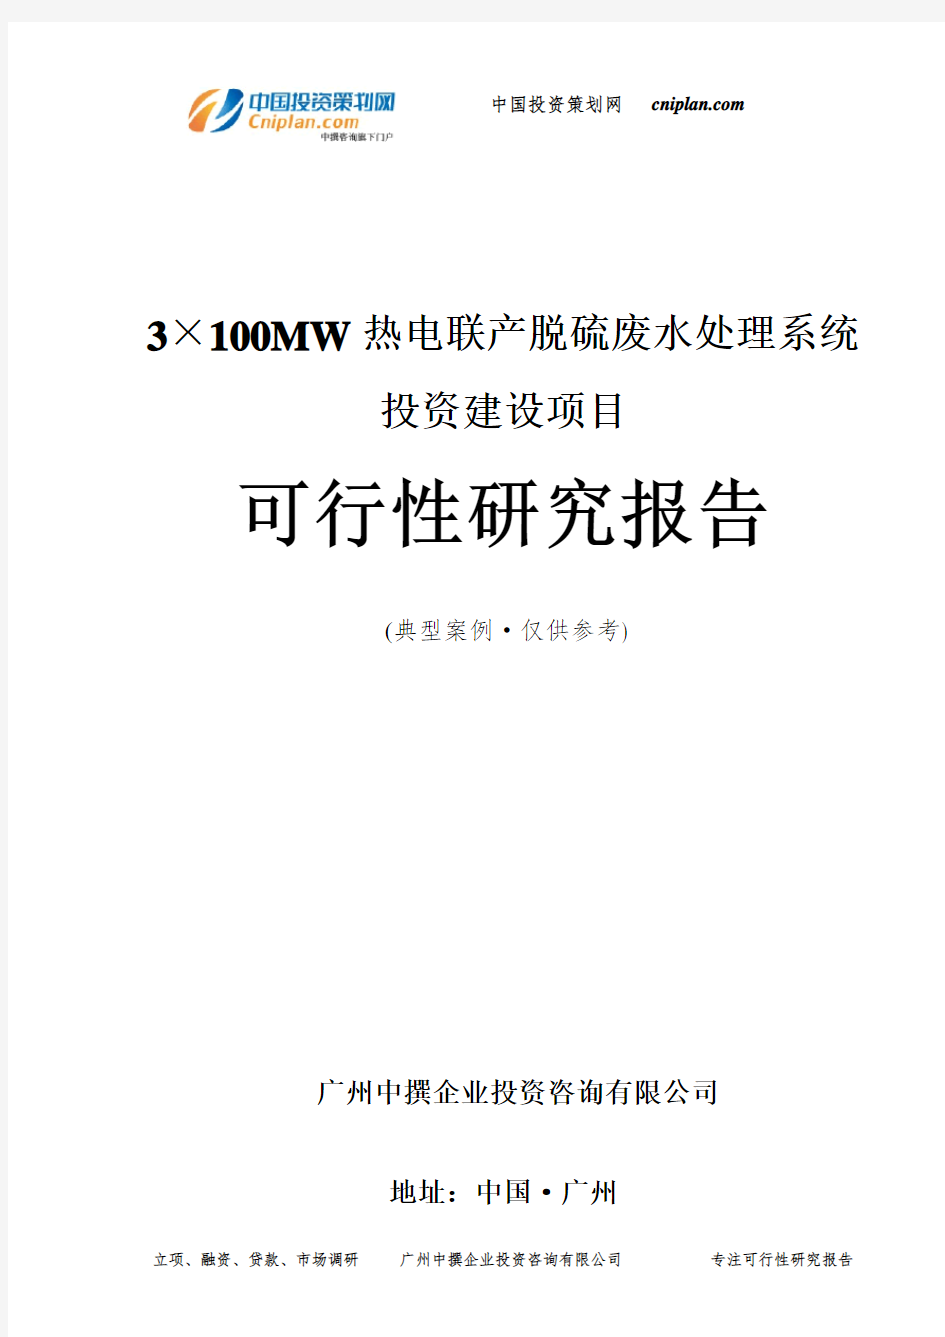 3×100MW热电联产脱硫废水处理系统投资建设项目可行性研究报告-广州中撰咨询